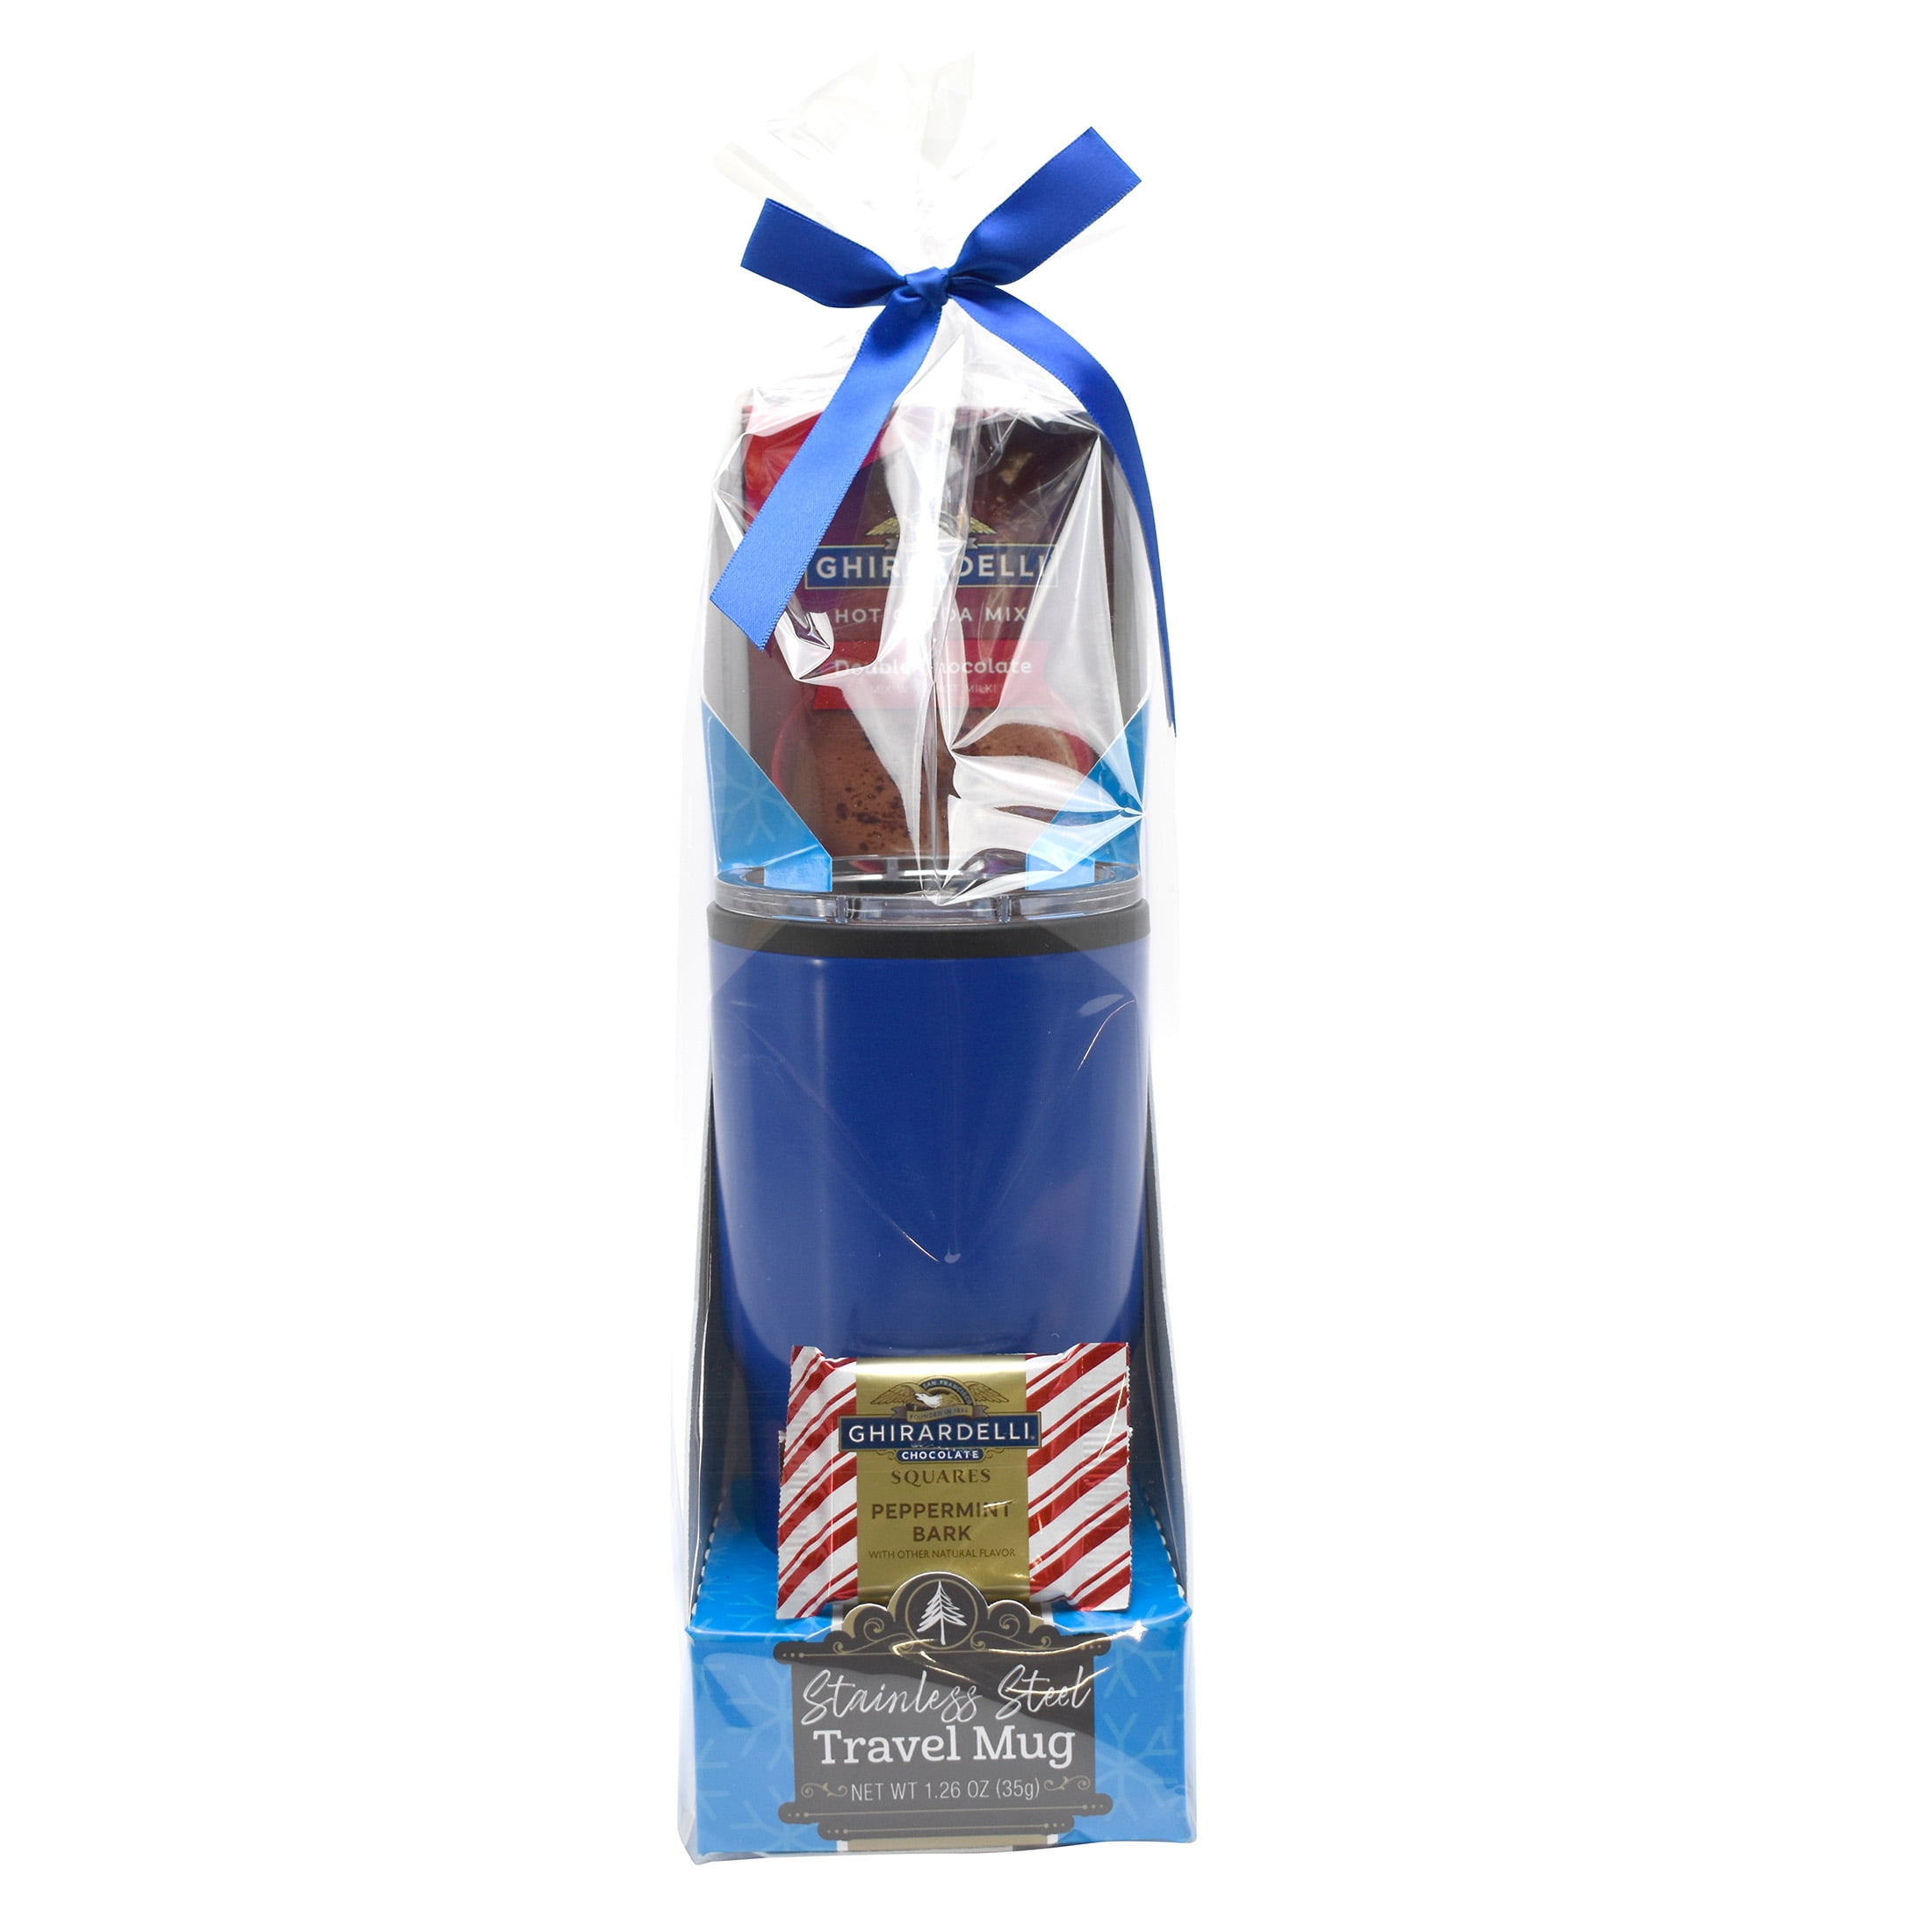 Ghirardelli Cocoa And Chocolate Travel Mug Christmas Gift Set Oz